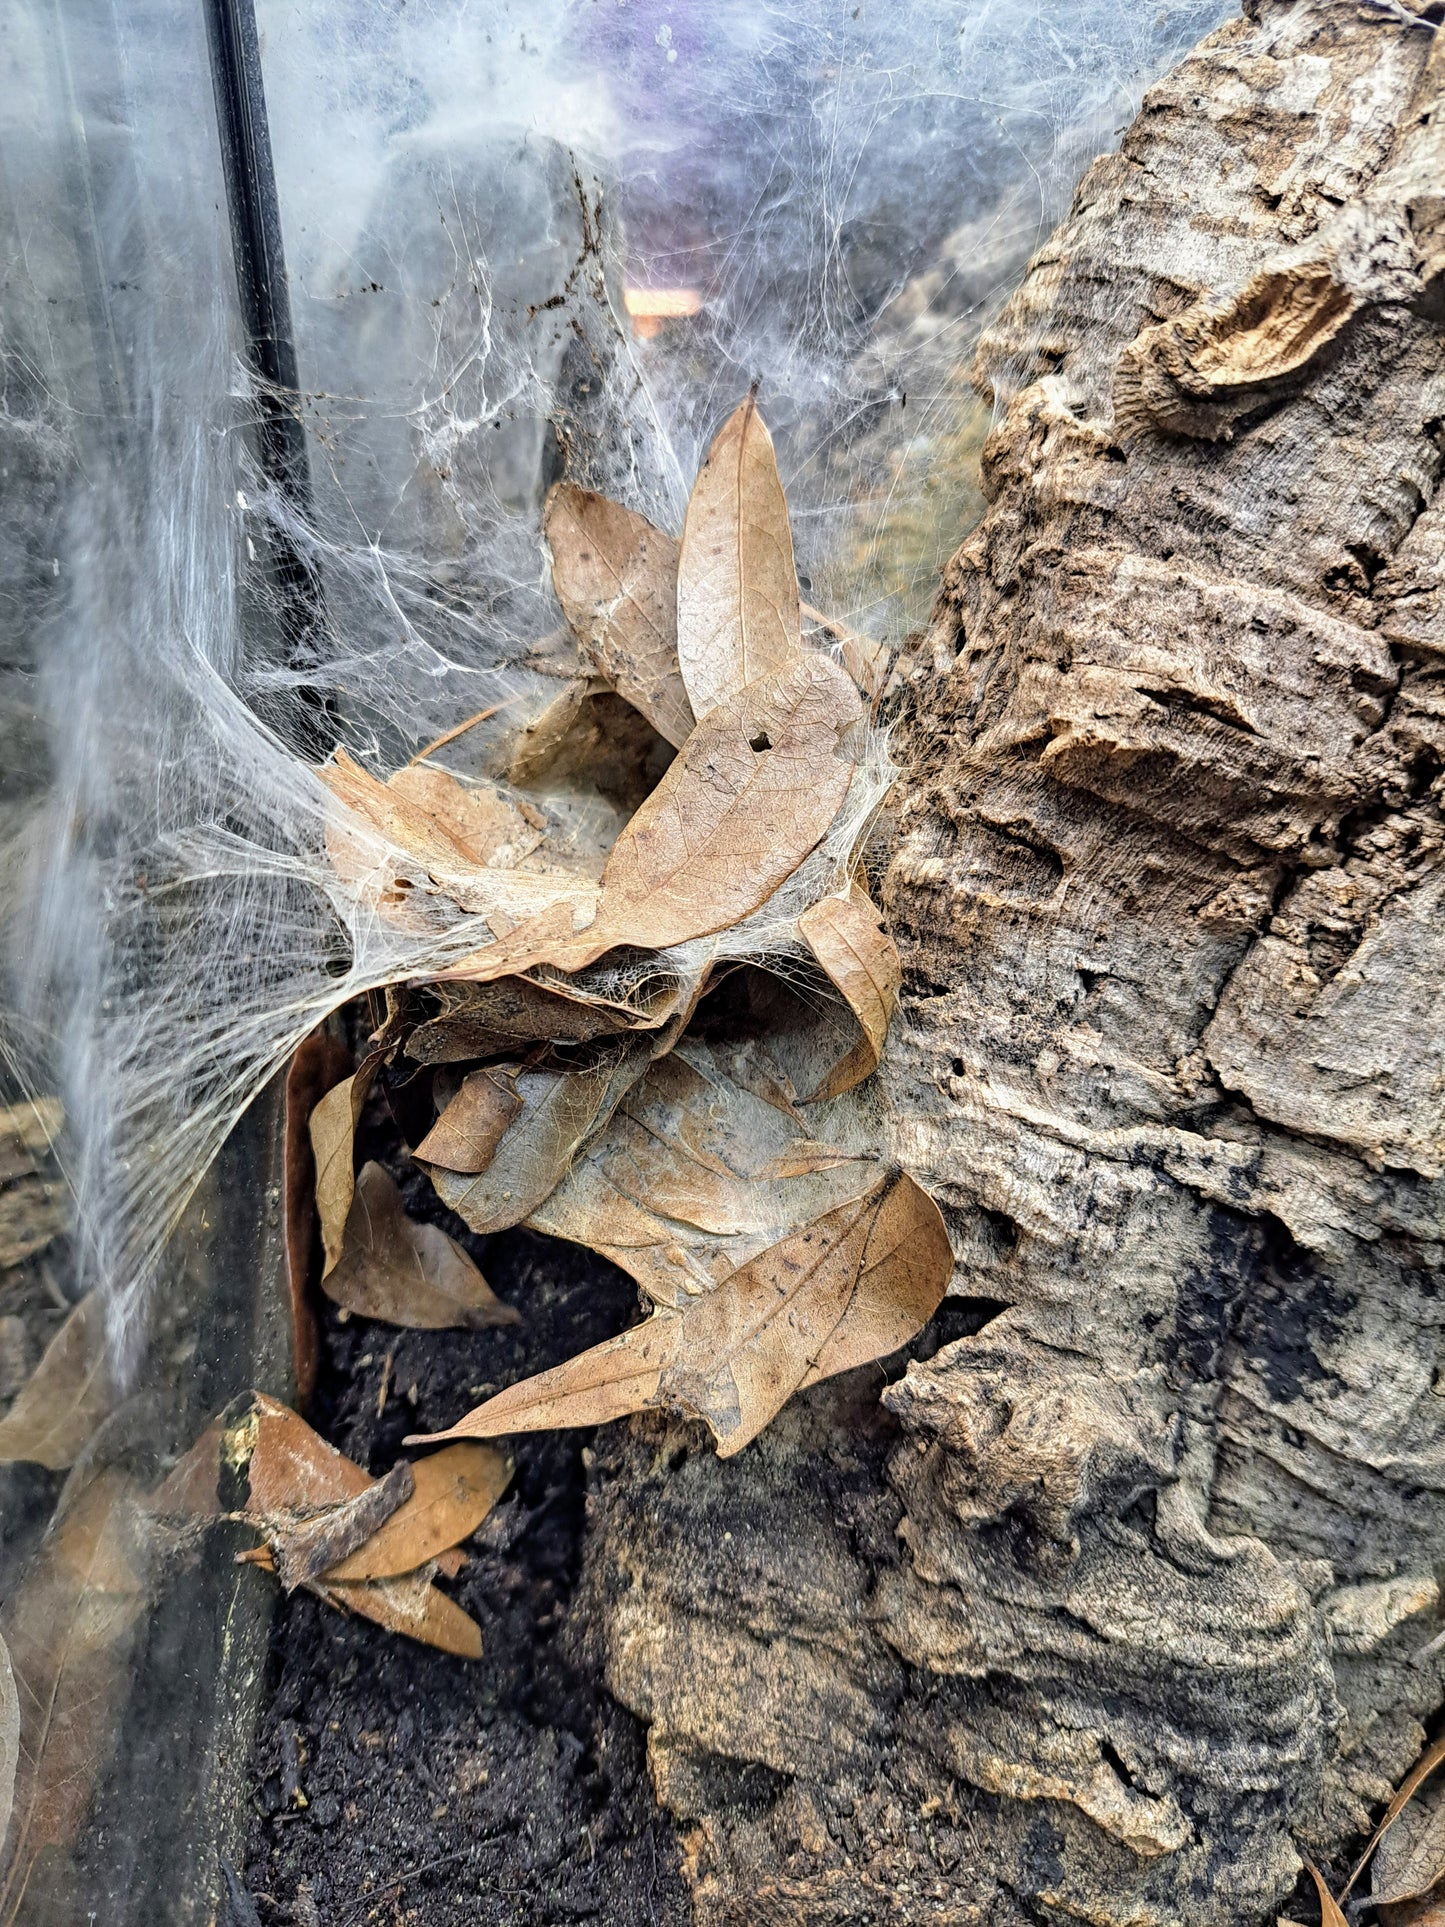 mixed oak leaf litter